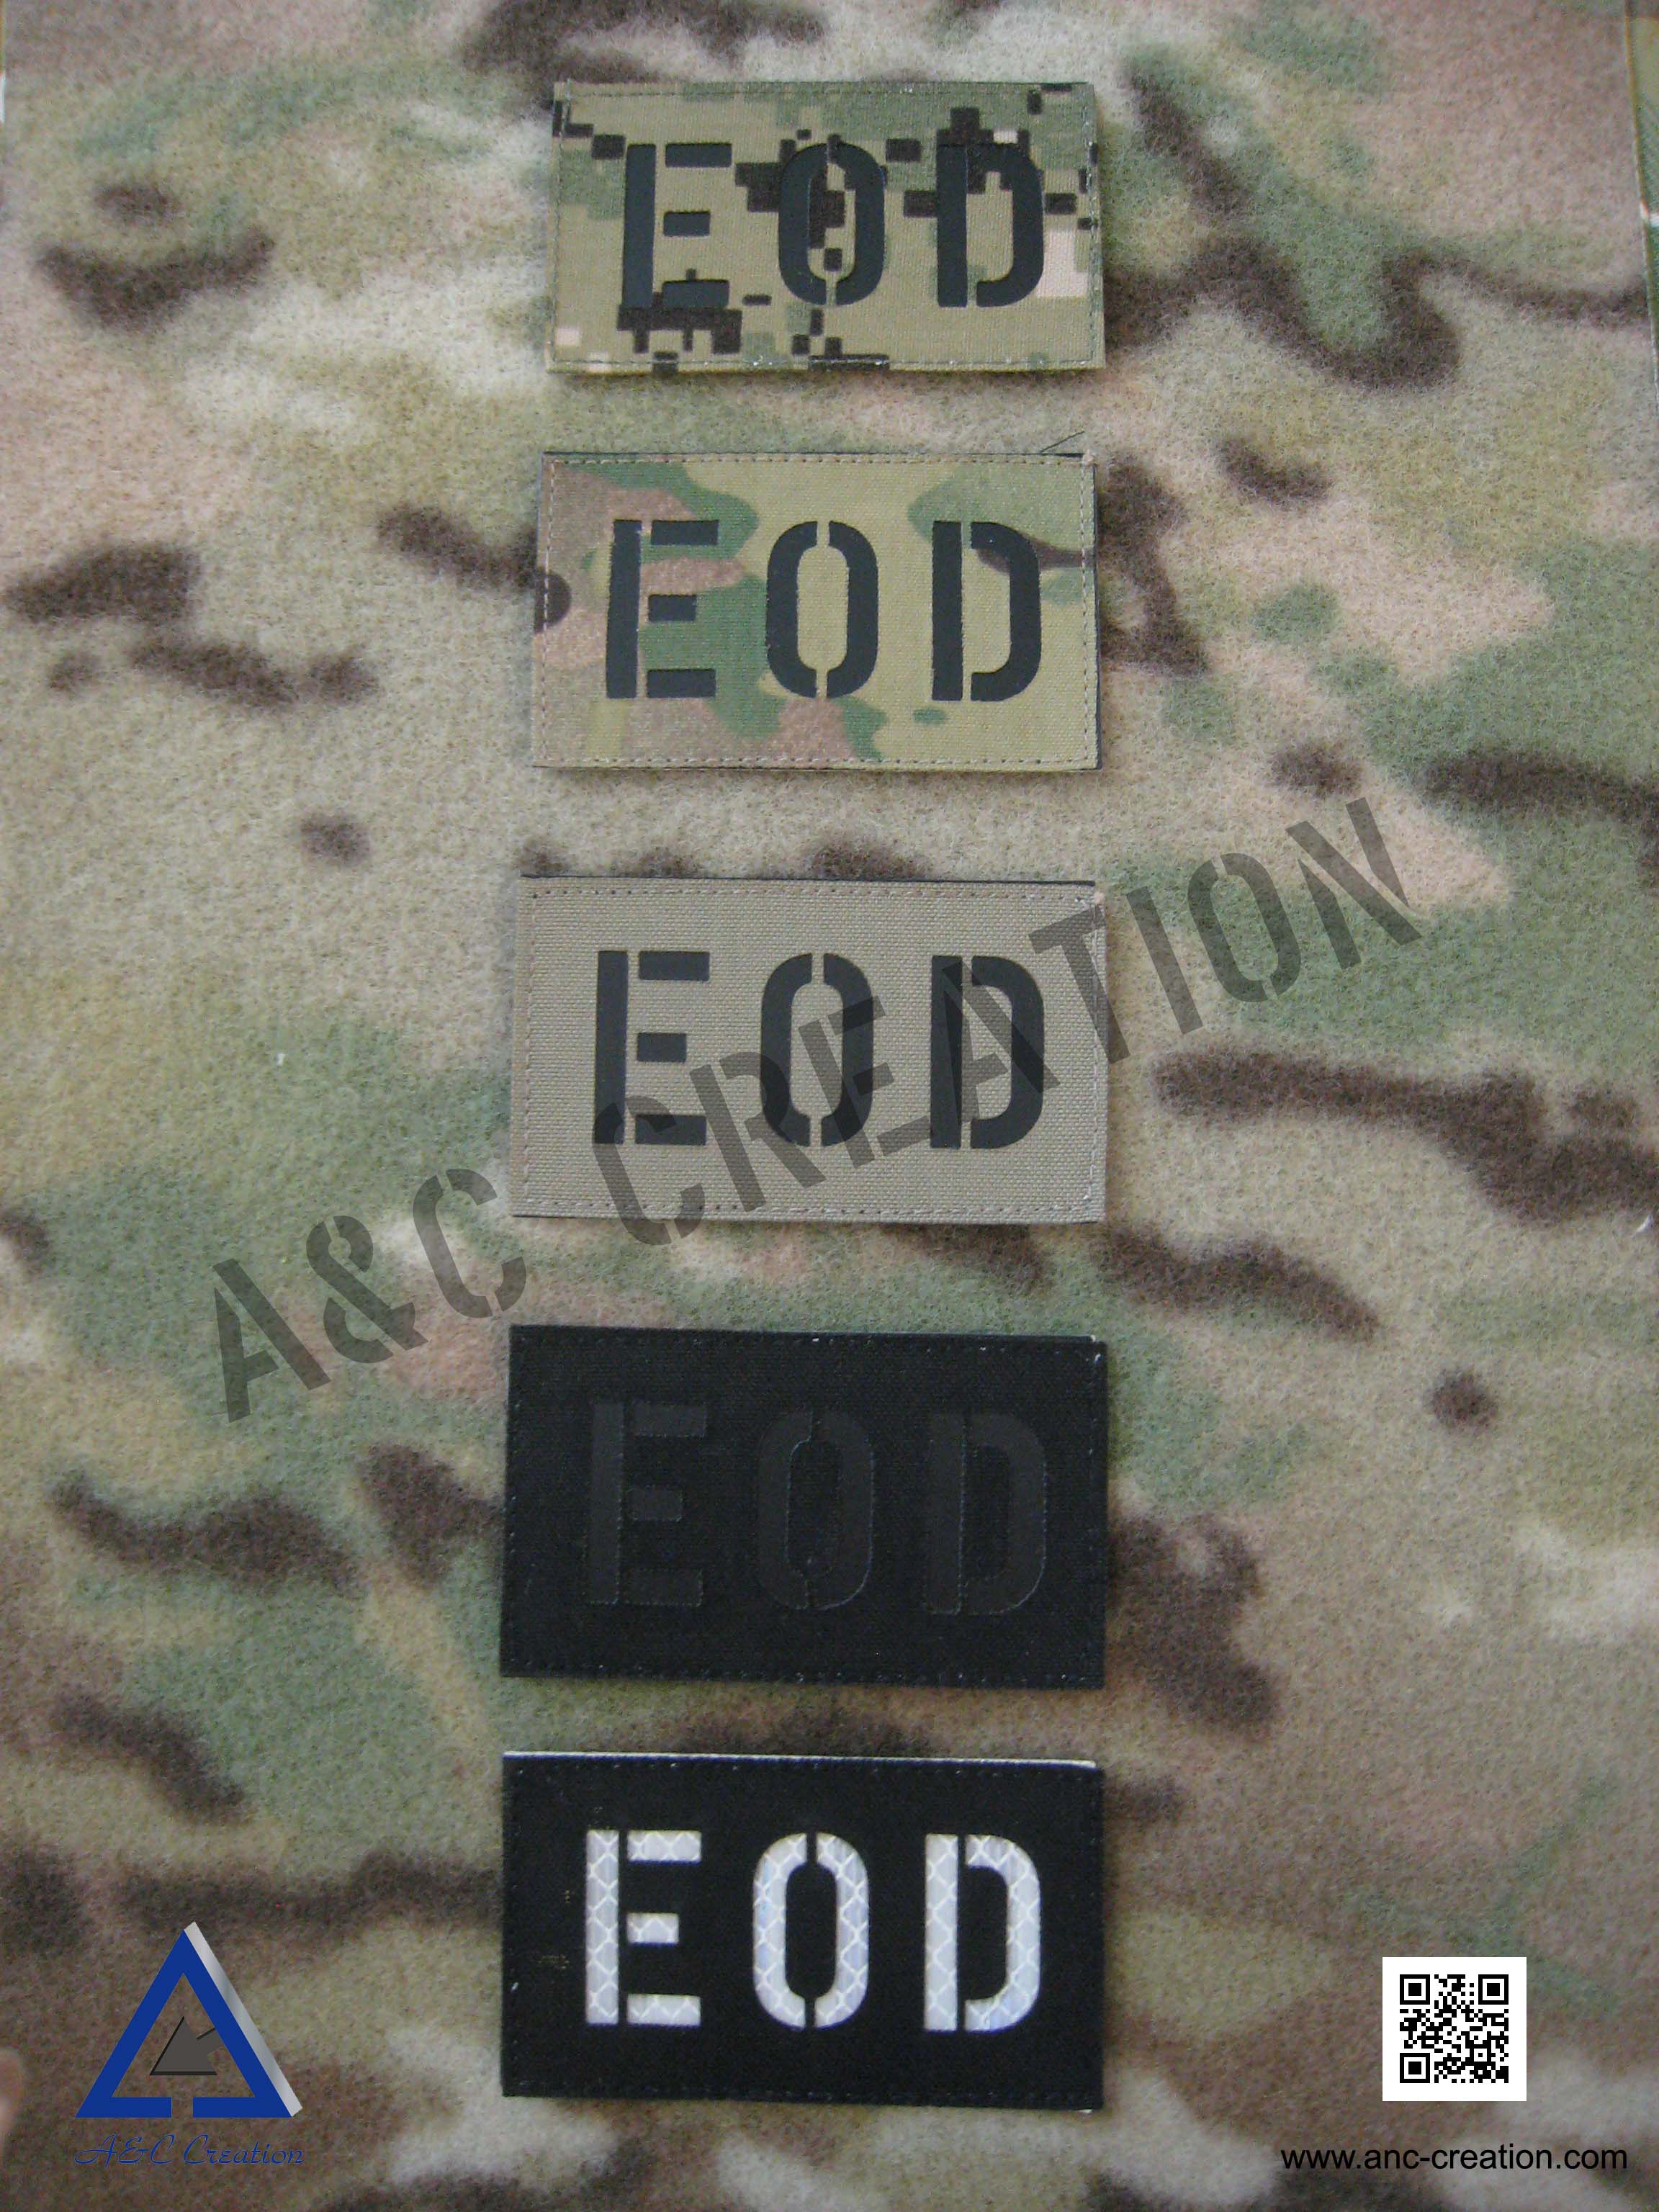 PM009Av-EOD IR (Infra Red) Explosive Ordnance Disposal (EOD) Patch